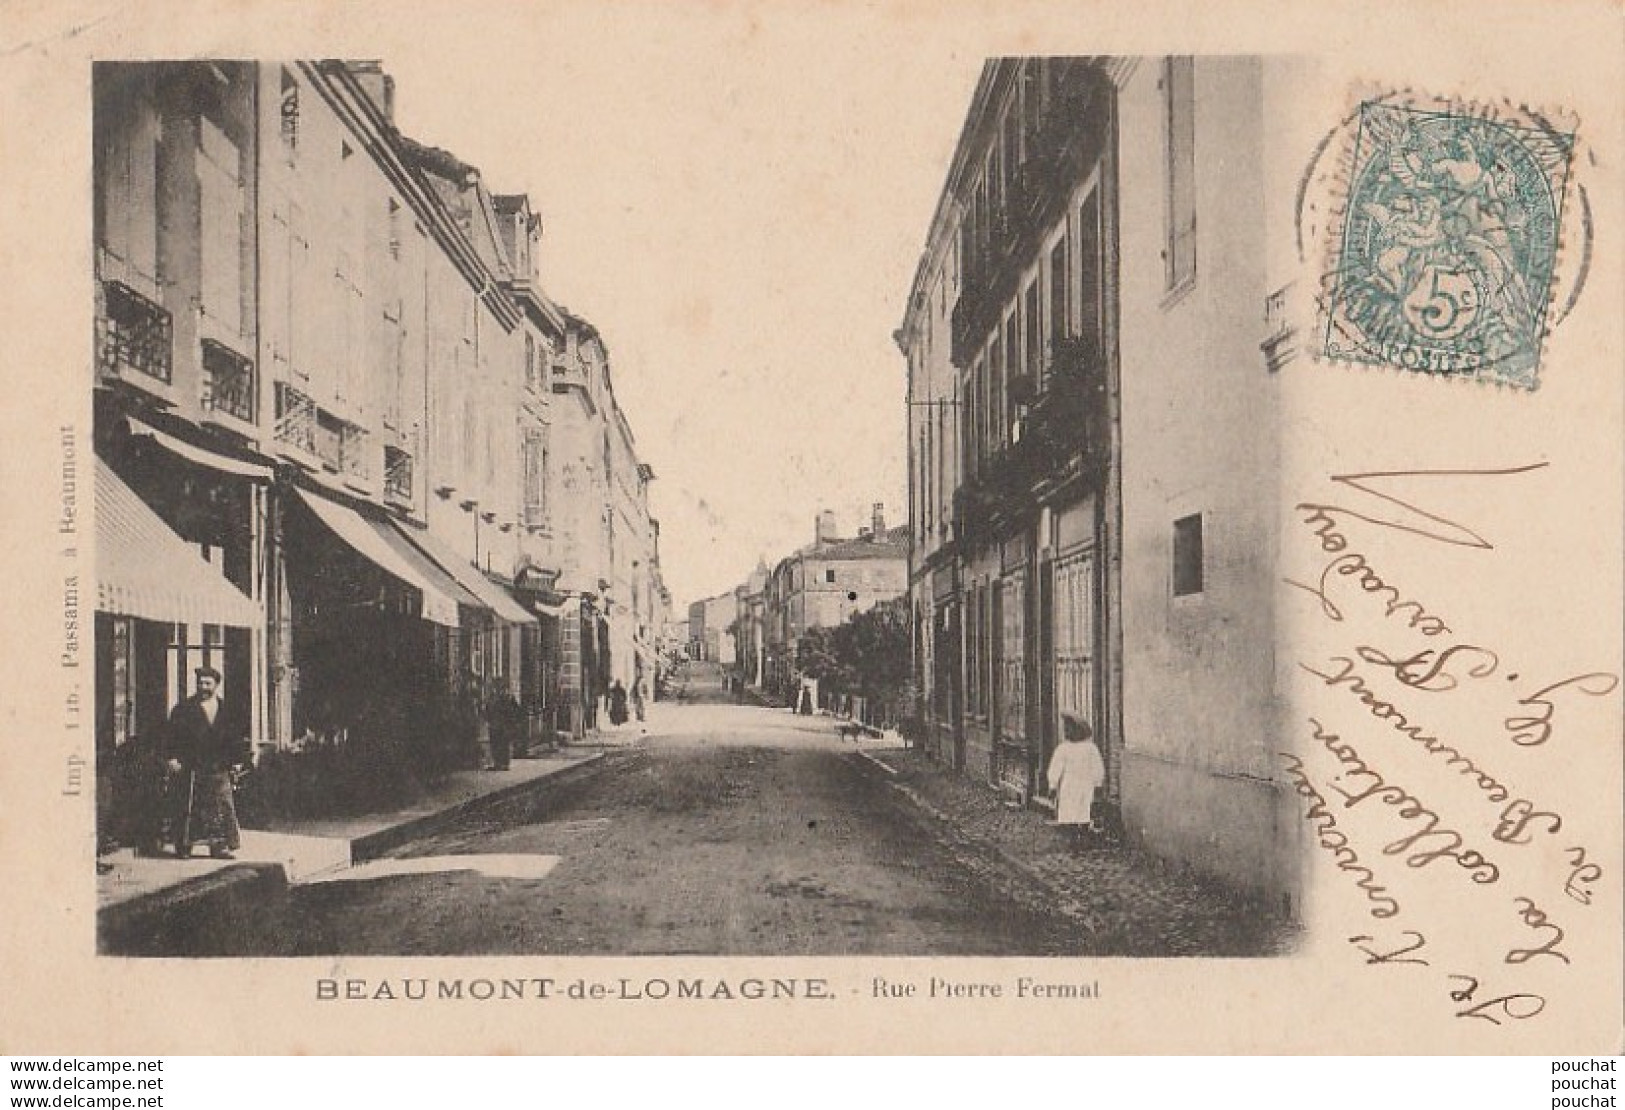 I14- 82) BEAUMONT DE LOMAGNE (TARN ET GARONNE) RUE PIERRE FERMAT - (ANIMEE - COMMERCES - OBLITERATION DE 1903 - 2 SCANS) - Beaumont De Lomagne